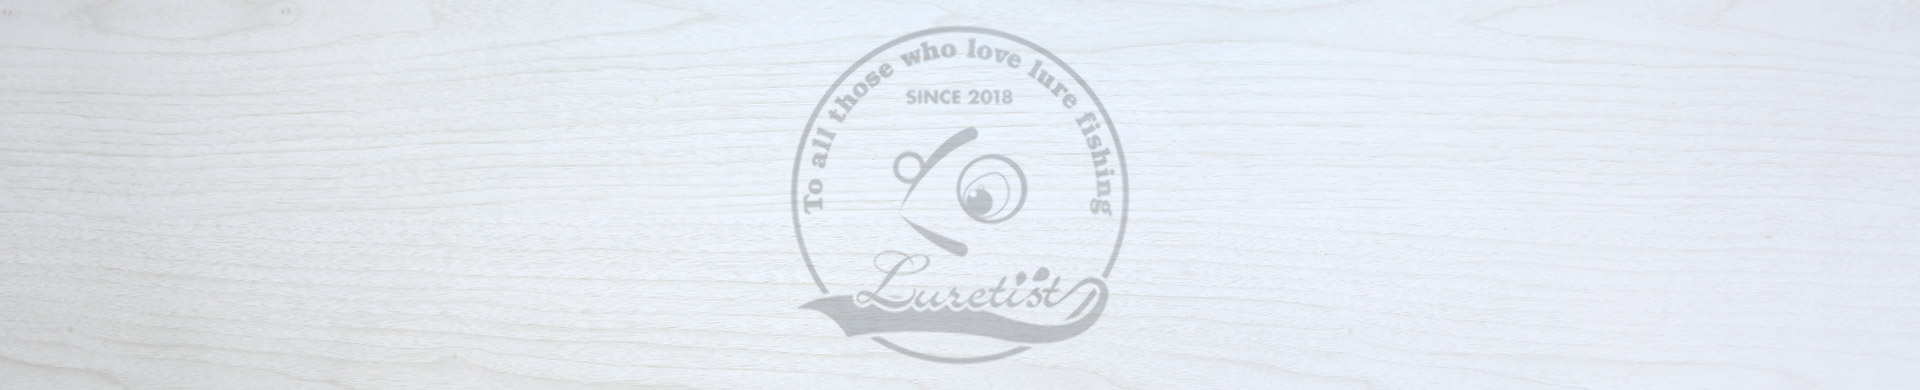 ルアーフィッシングを愛するすべての人へ ルアーフィッシング情報サイト Luretistについて